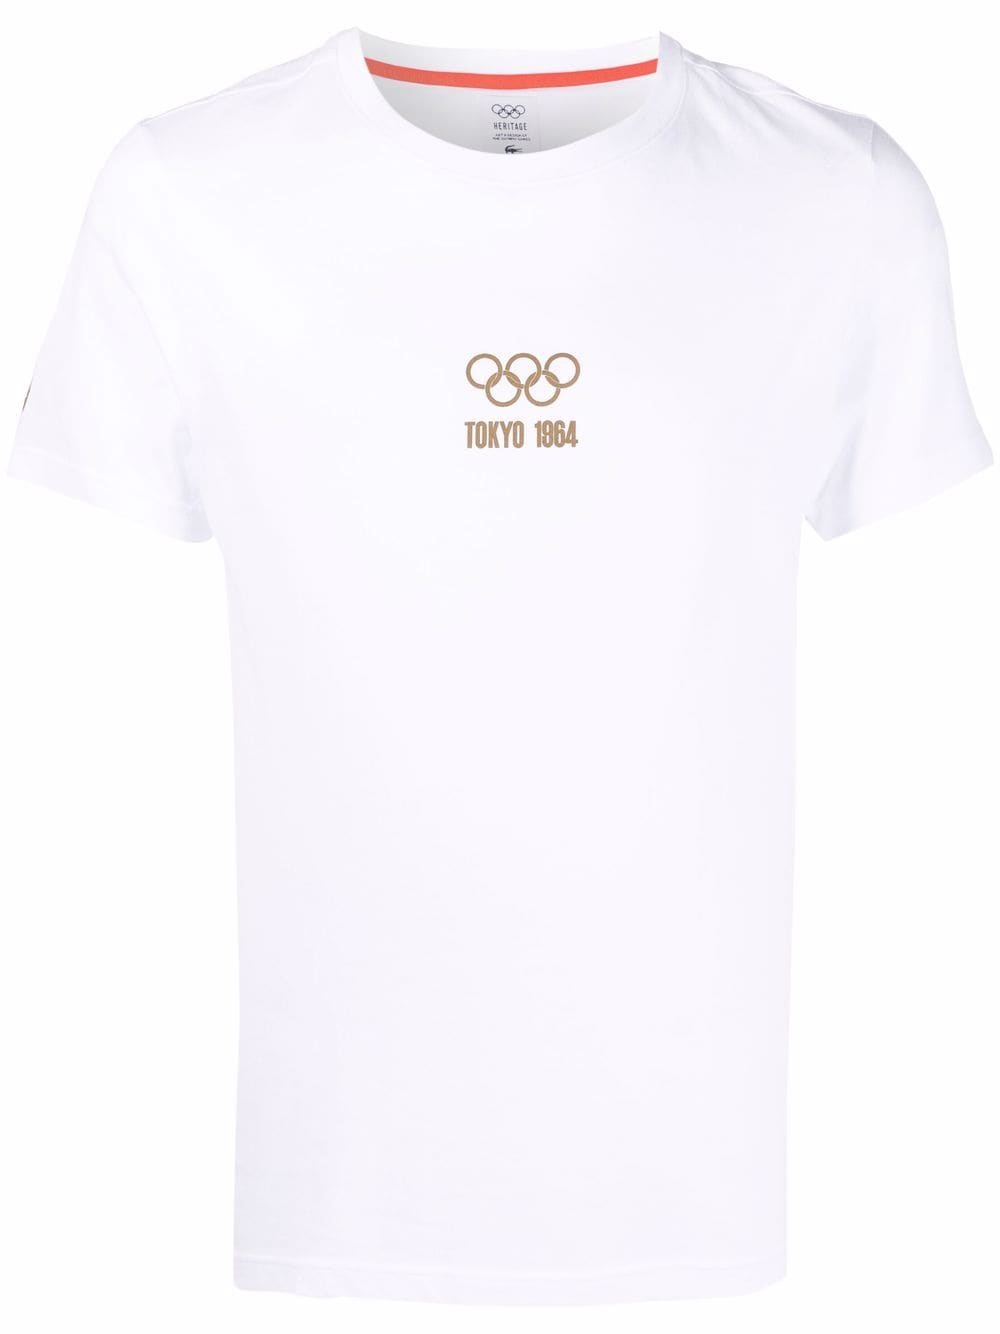 фото Lacoste футболка olympics tokyo 1984